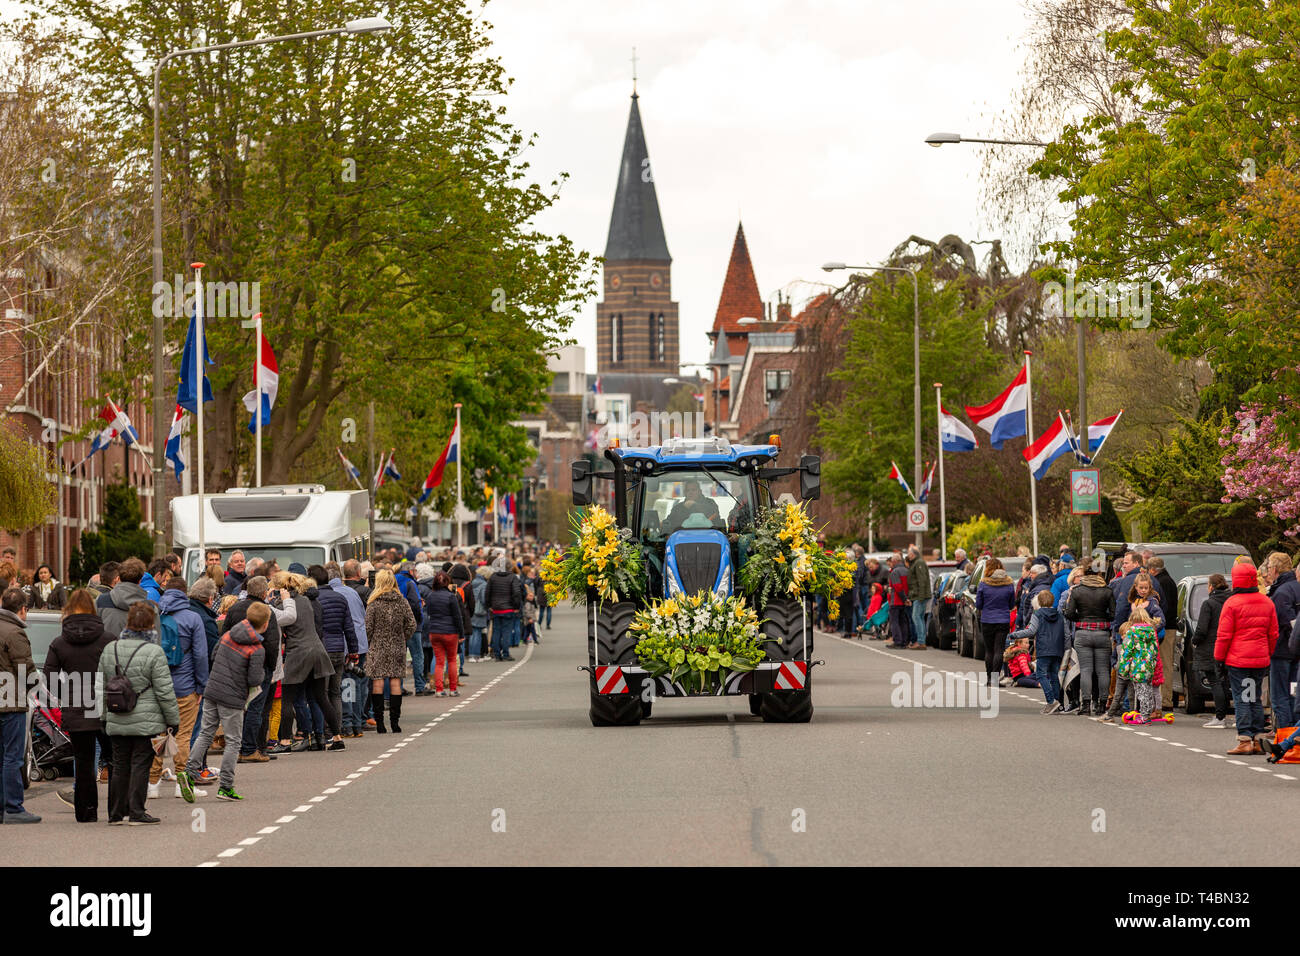 Ein Traktor mit wunderschönen Blumen und viele Zuschauer bei der jährlichen bloemencorso Glühlampe Blumenkorso in der hoofdstraat in der niederländischen Dorf Sass Stockfoto